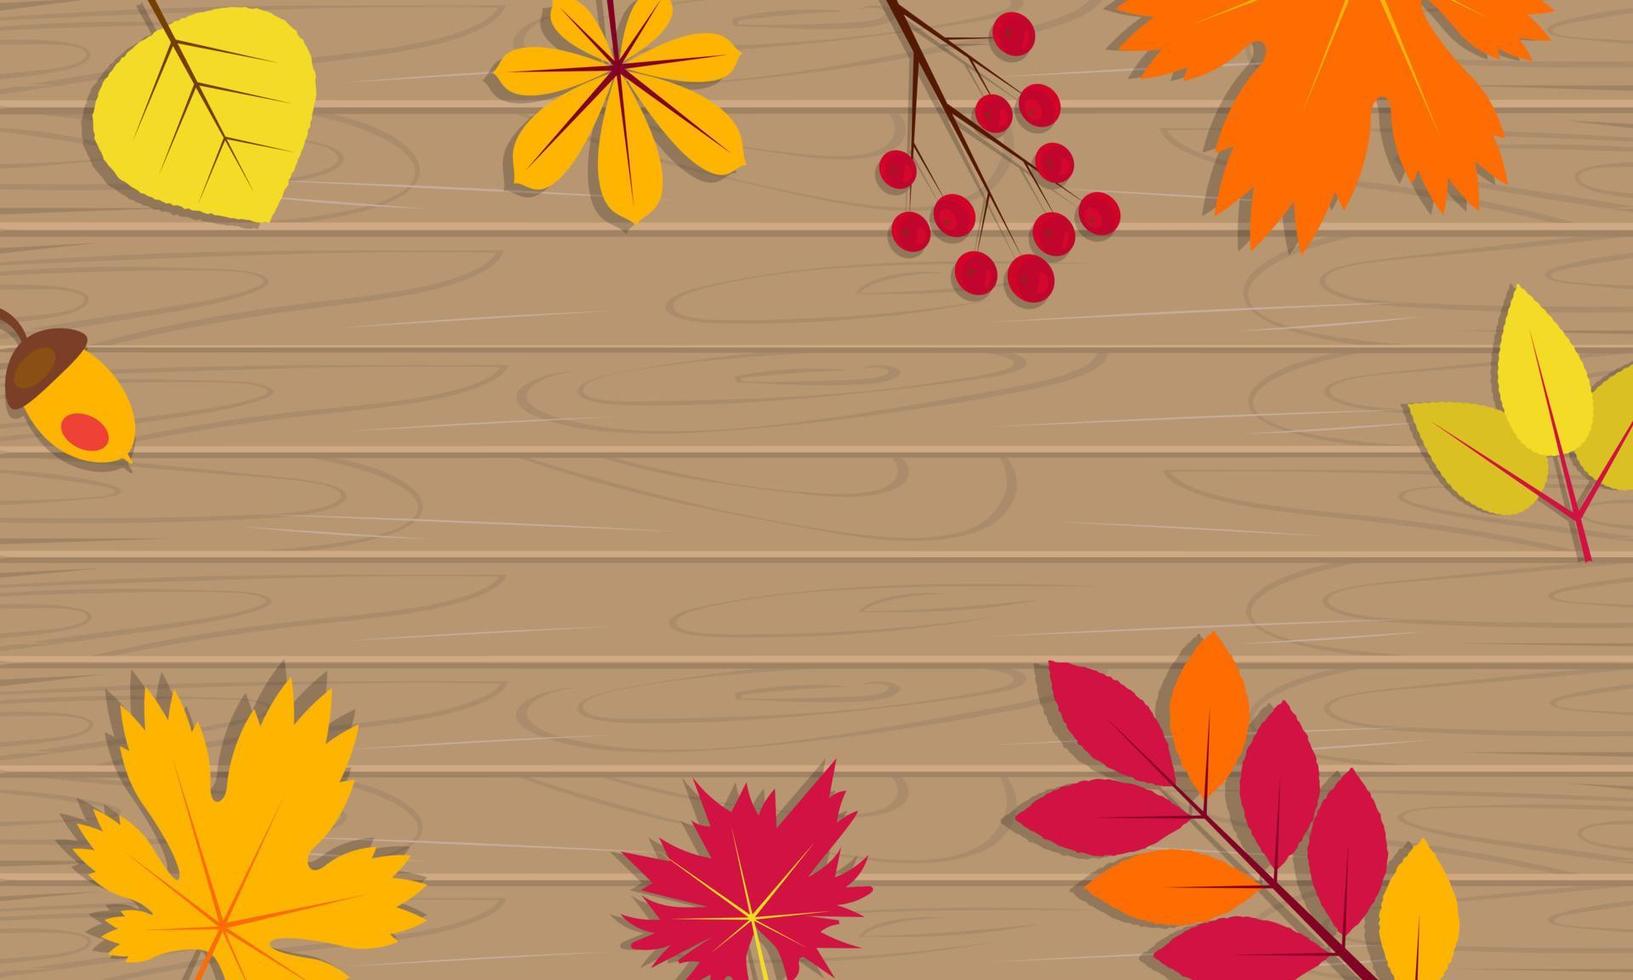 Holzhintergrund mit Herbstlaub. gelber und roter Ahornblatt-, Eichel- und Beerenrahmen. Vektor-Illustration vektor